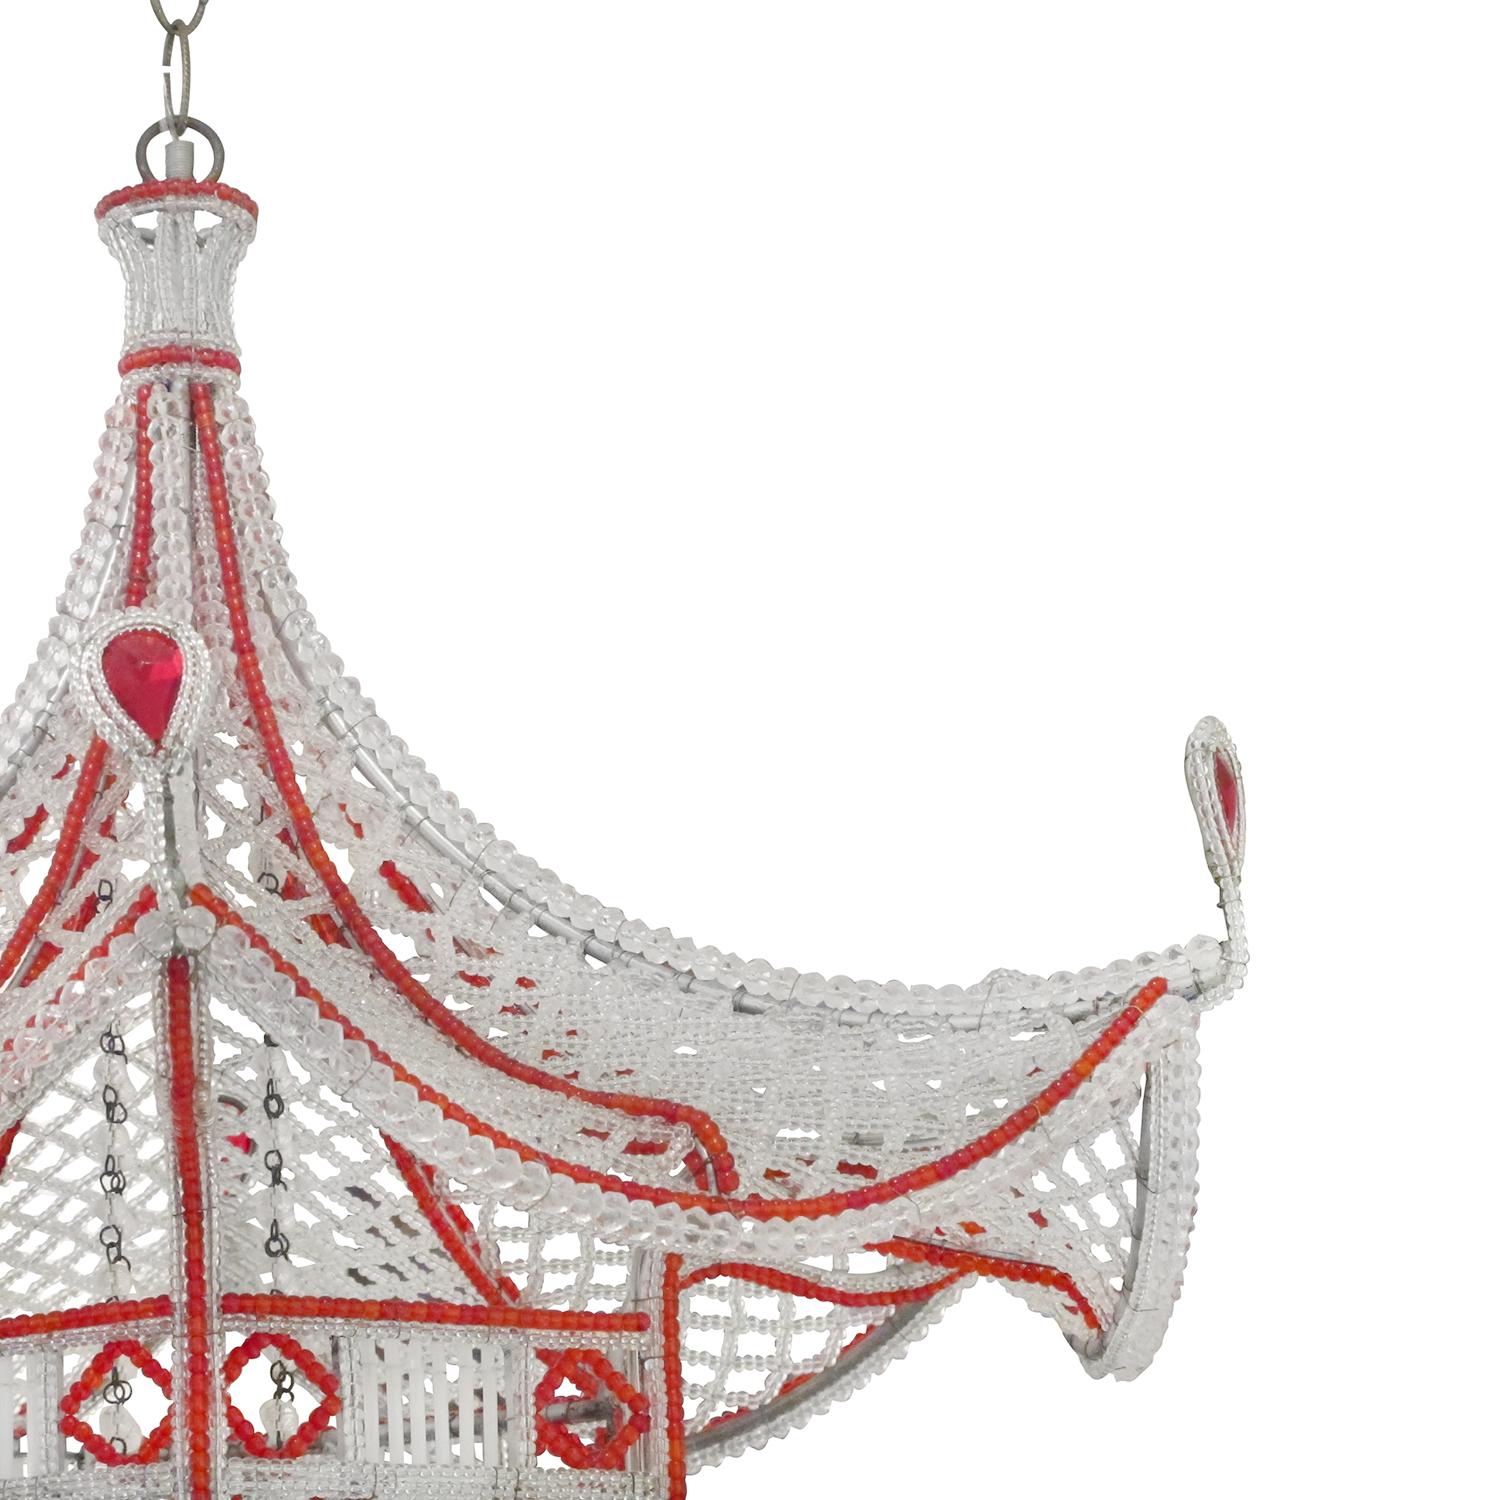 Lustre pagode coloré en cristal soufflé attribué à la Maison Baguès, en bon état. La suspension parisienne hexagonale détaillée est soutenue par une armature en métal chromé, particularisée par des pièces de verre prismatique suspendues rouges et